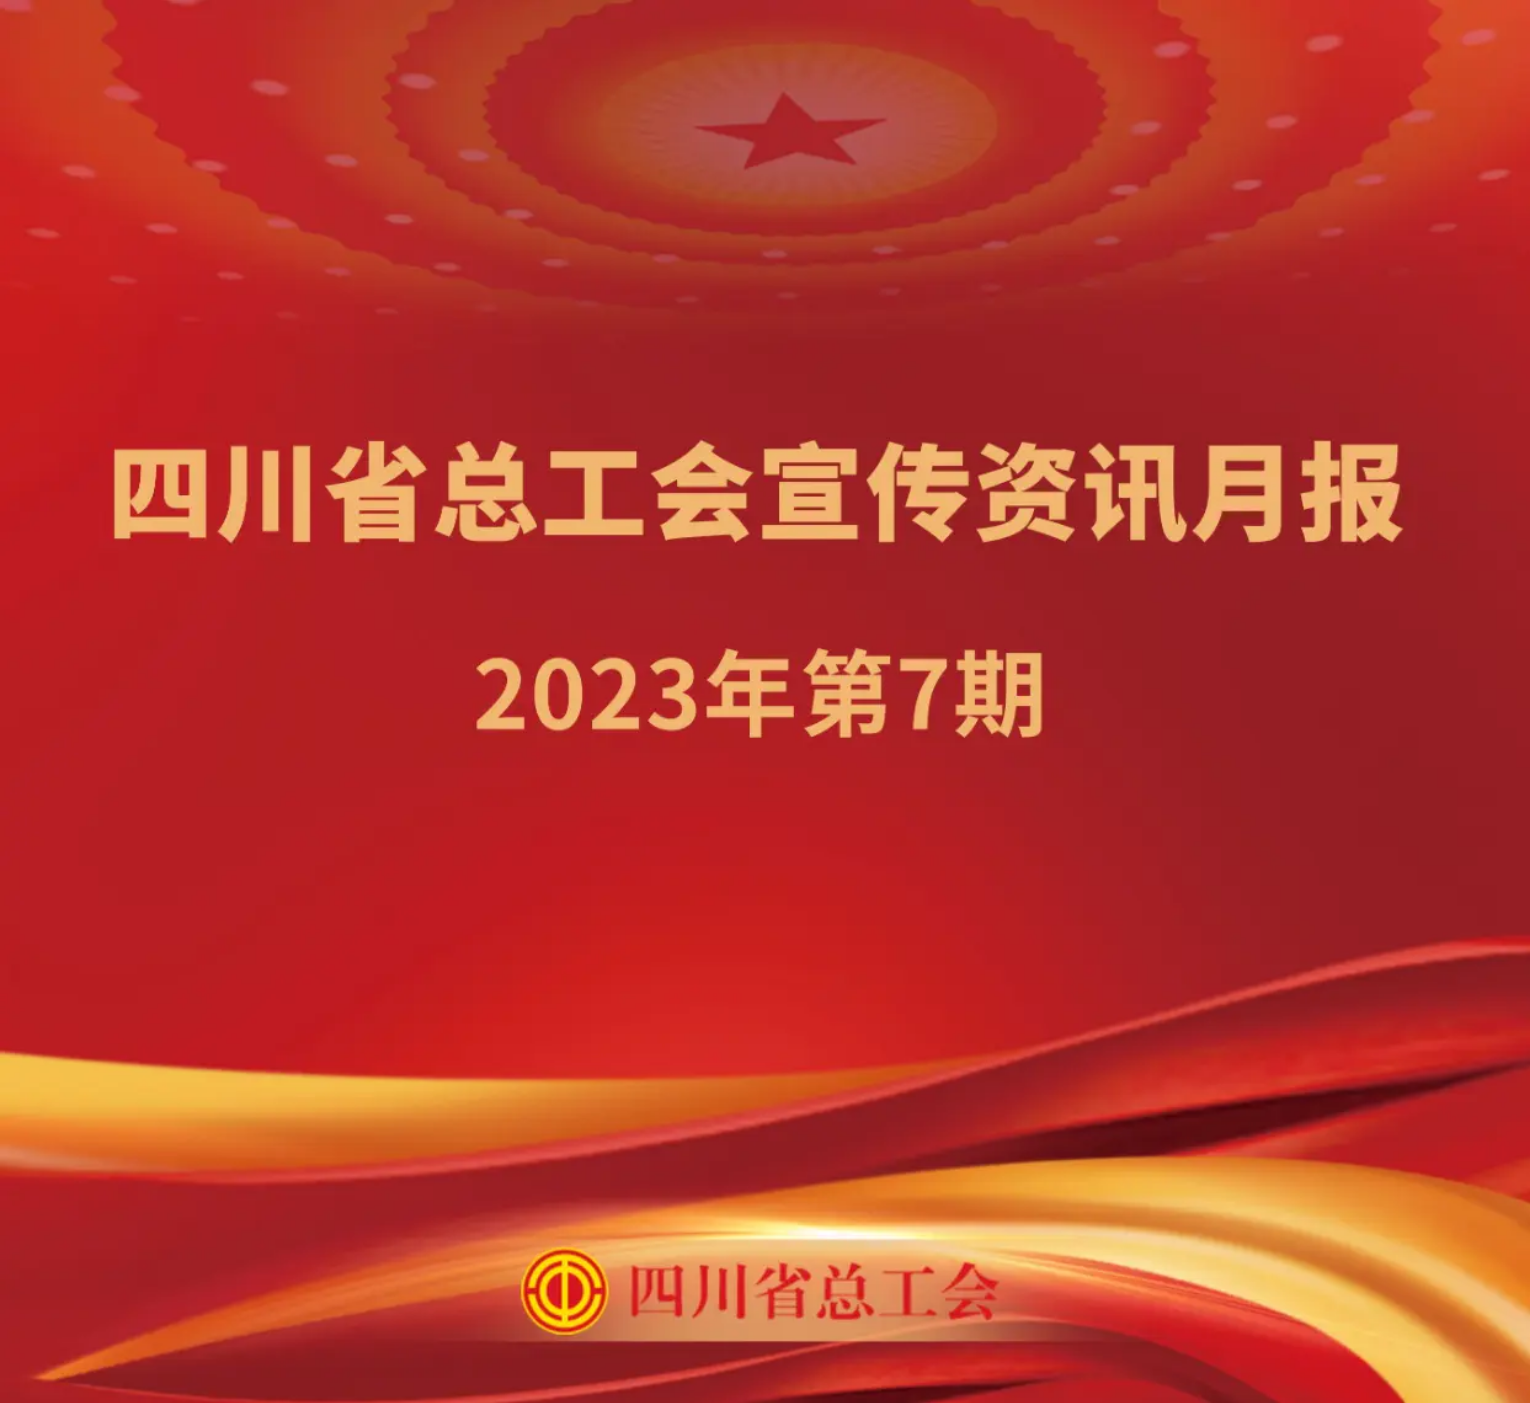 四川省总工会宣传资讯月报2023年第7期_装订本